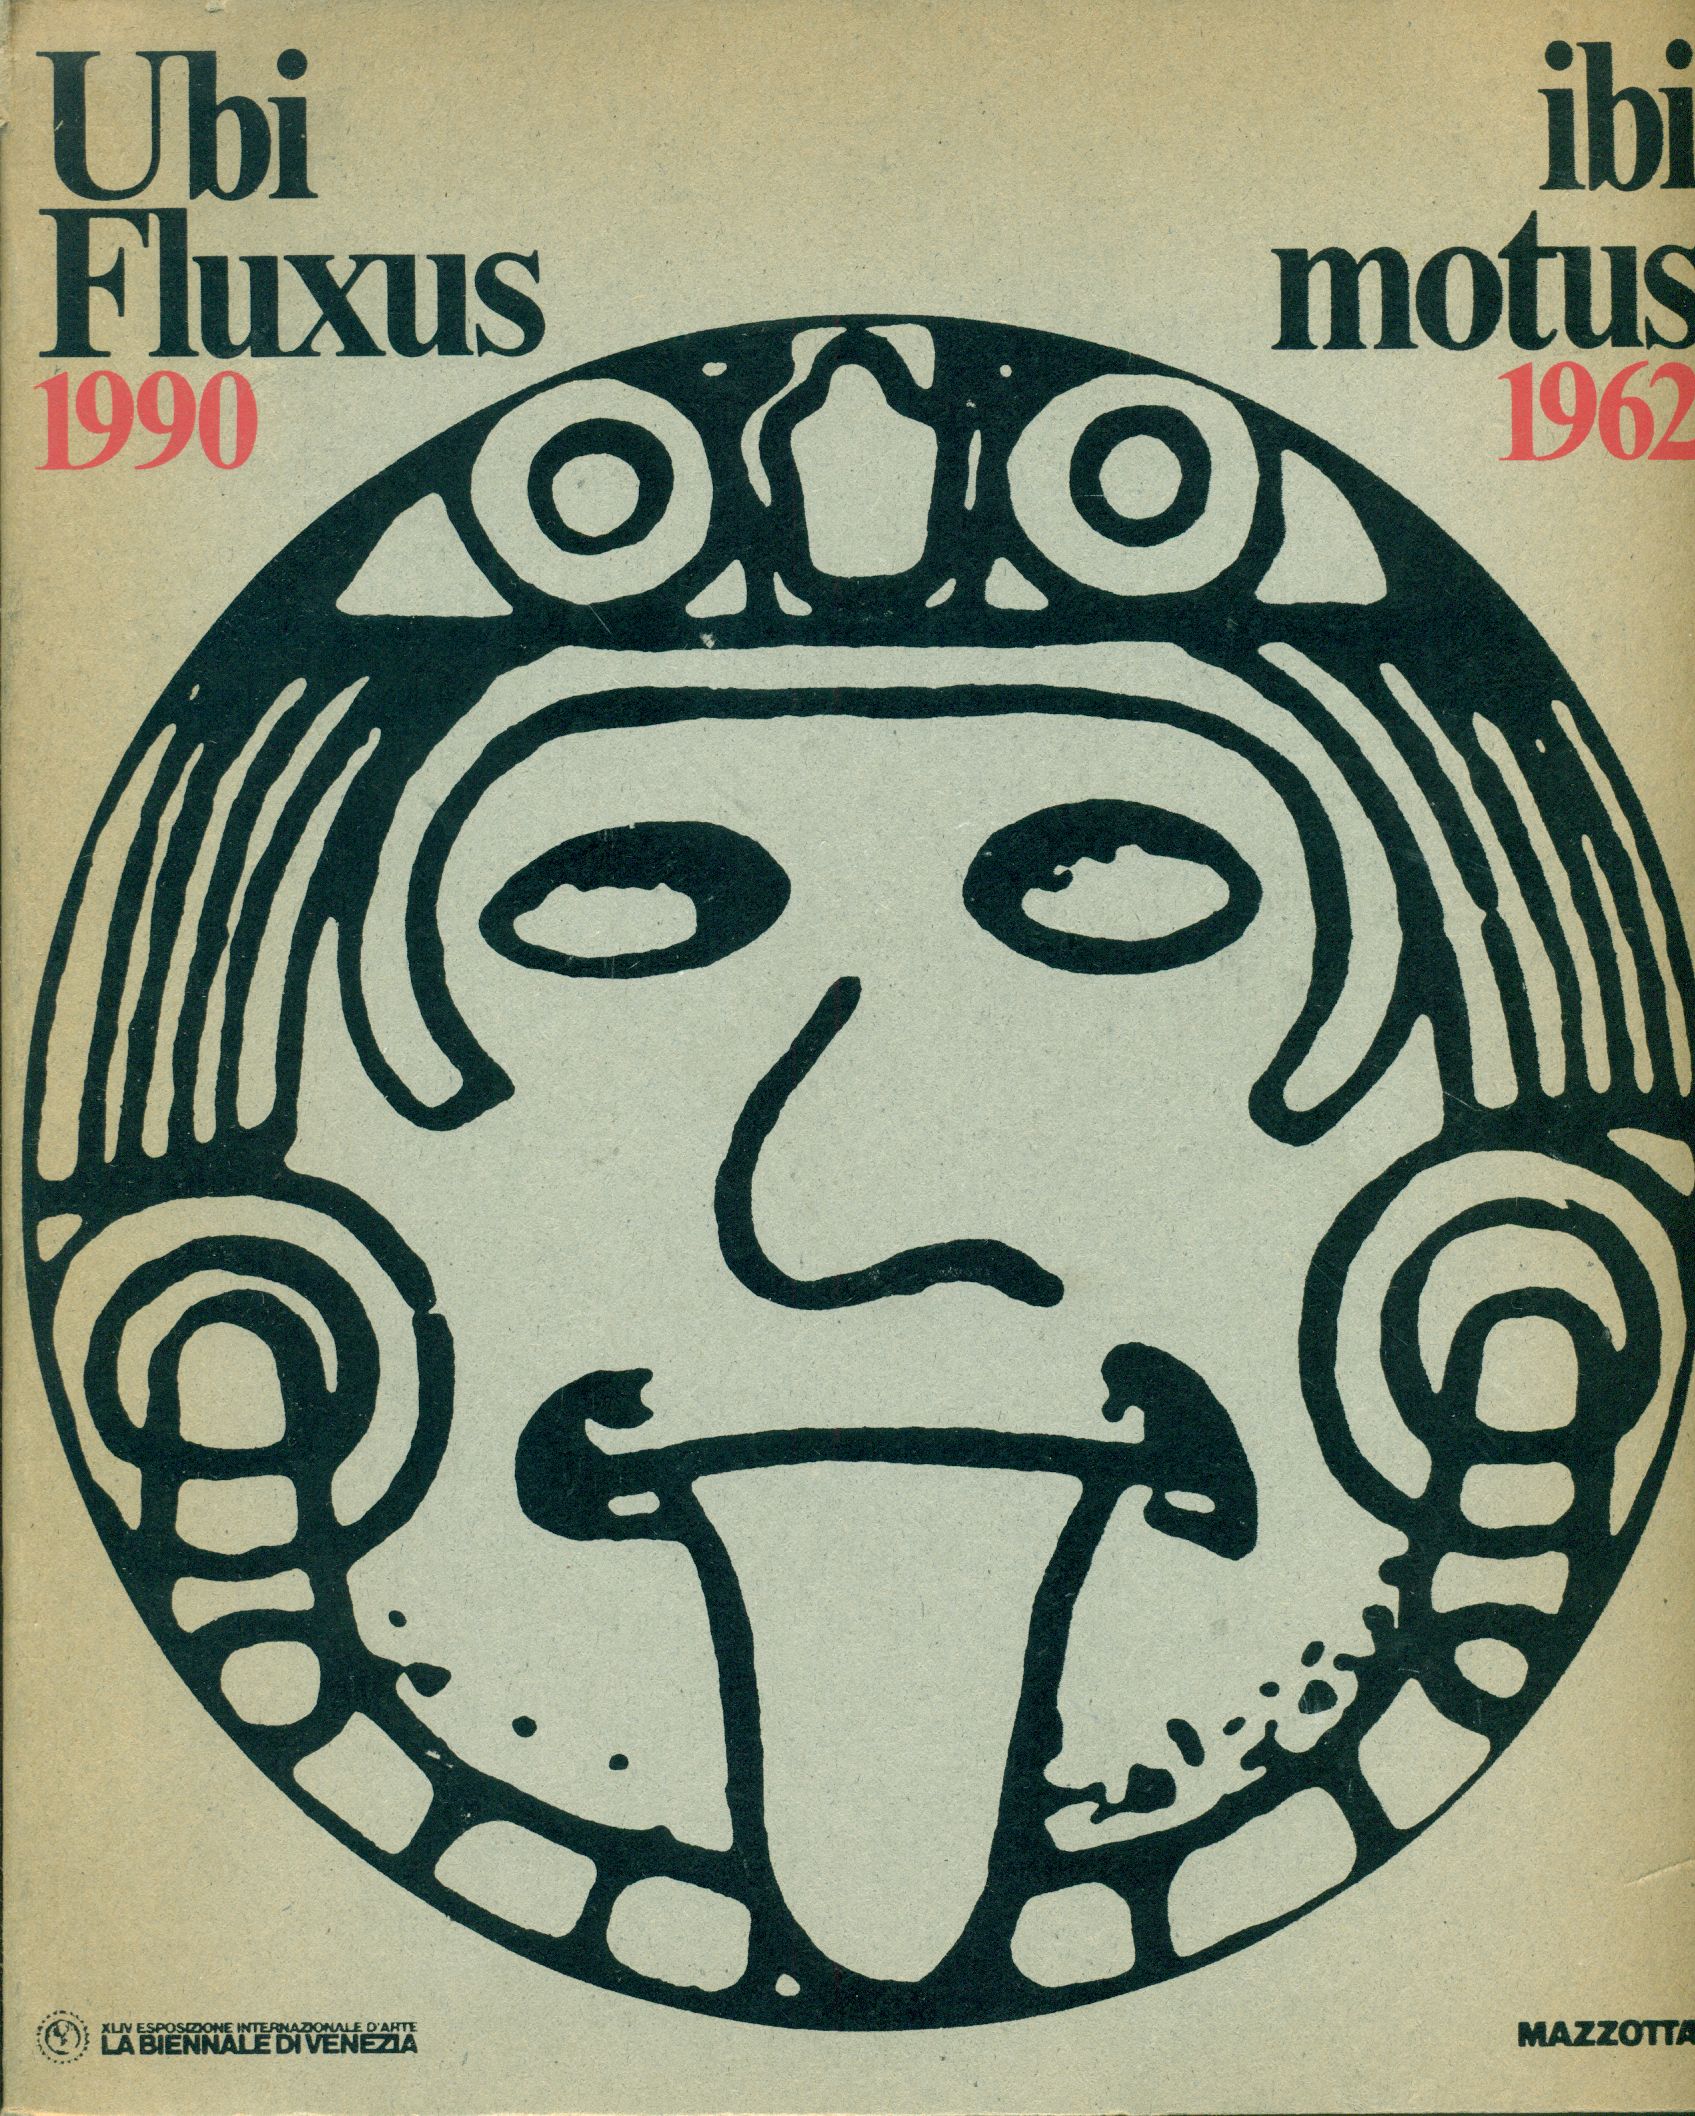 Ubi Fluxus Ibi Motus, 1990-1962